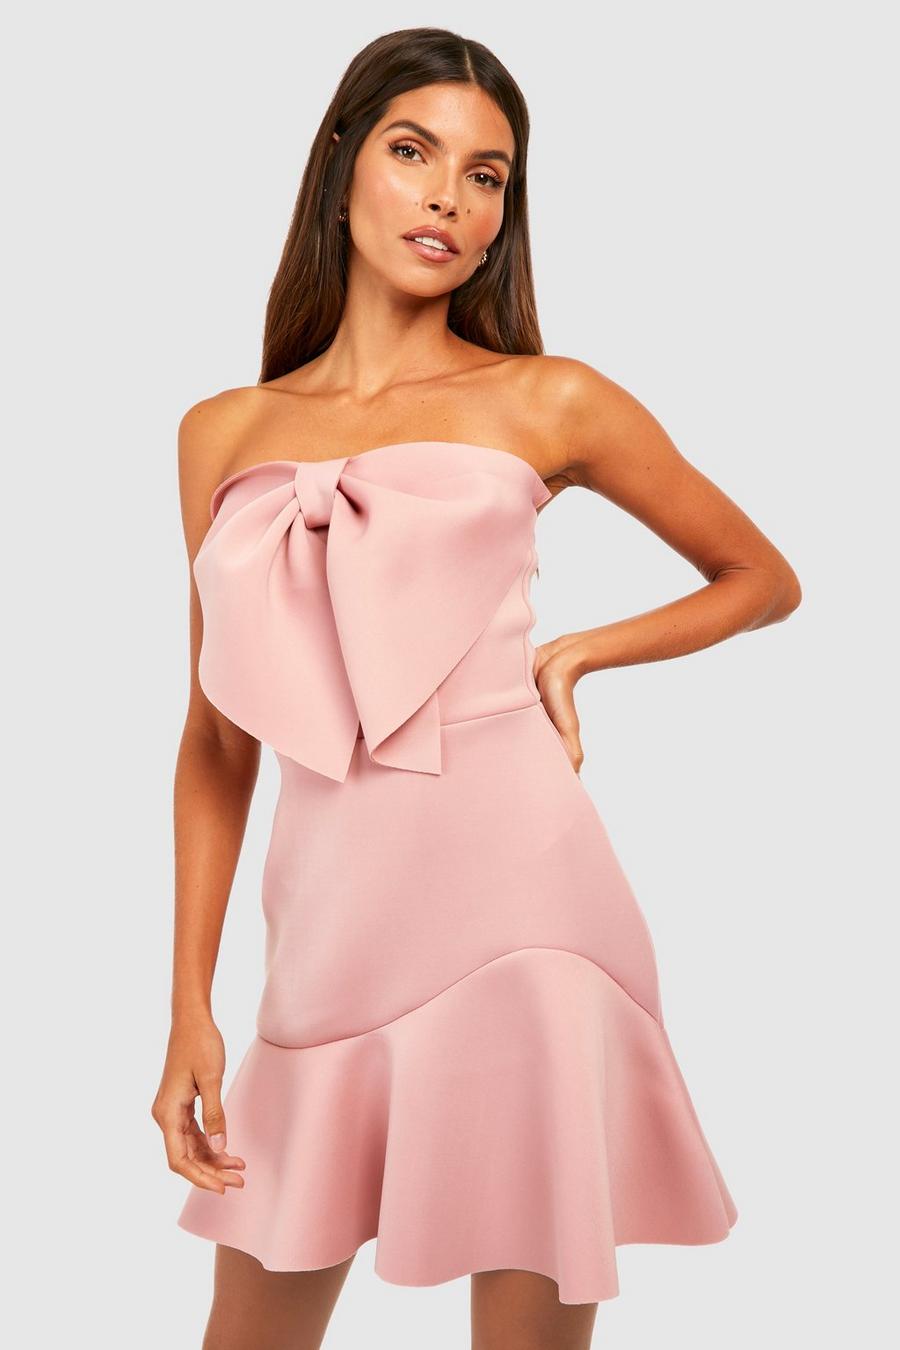 סמוק rosa שמלת מיני מבד סקובה עם מכפלת מסולסלת ועיטור פפיון